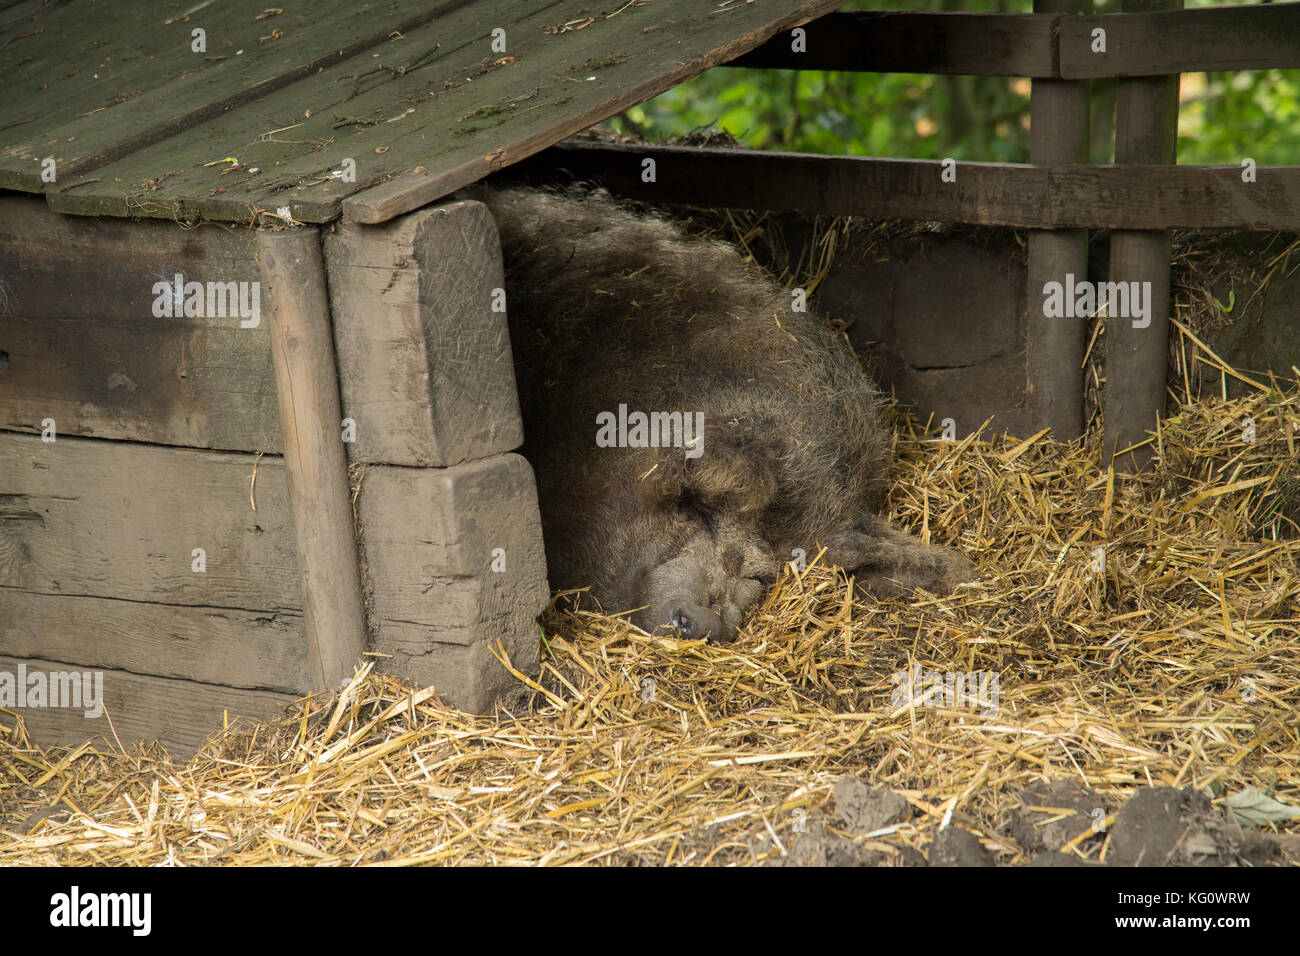 Grande, grigio, pigro, sleepy suino con muso prominente, si posa rannicchiò addormentato veloce, nel letto di paglia, nel cortile di legno sty - Inghilterra, GB, UK. Foto Stock